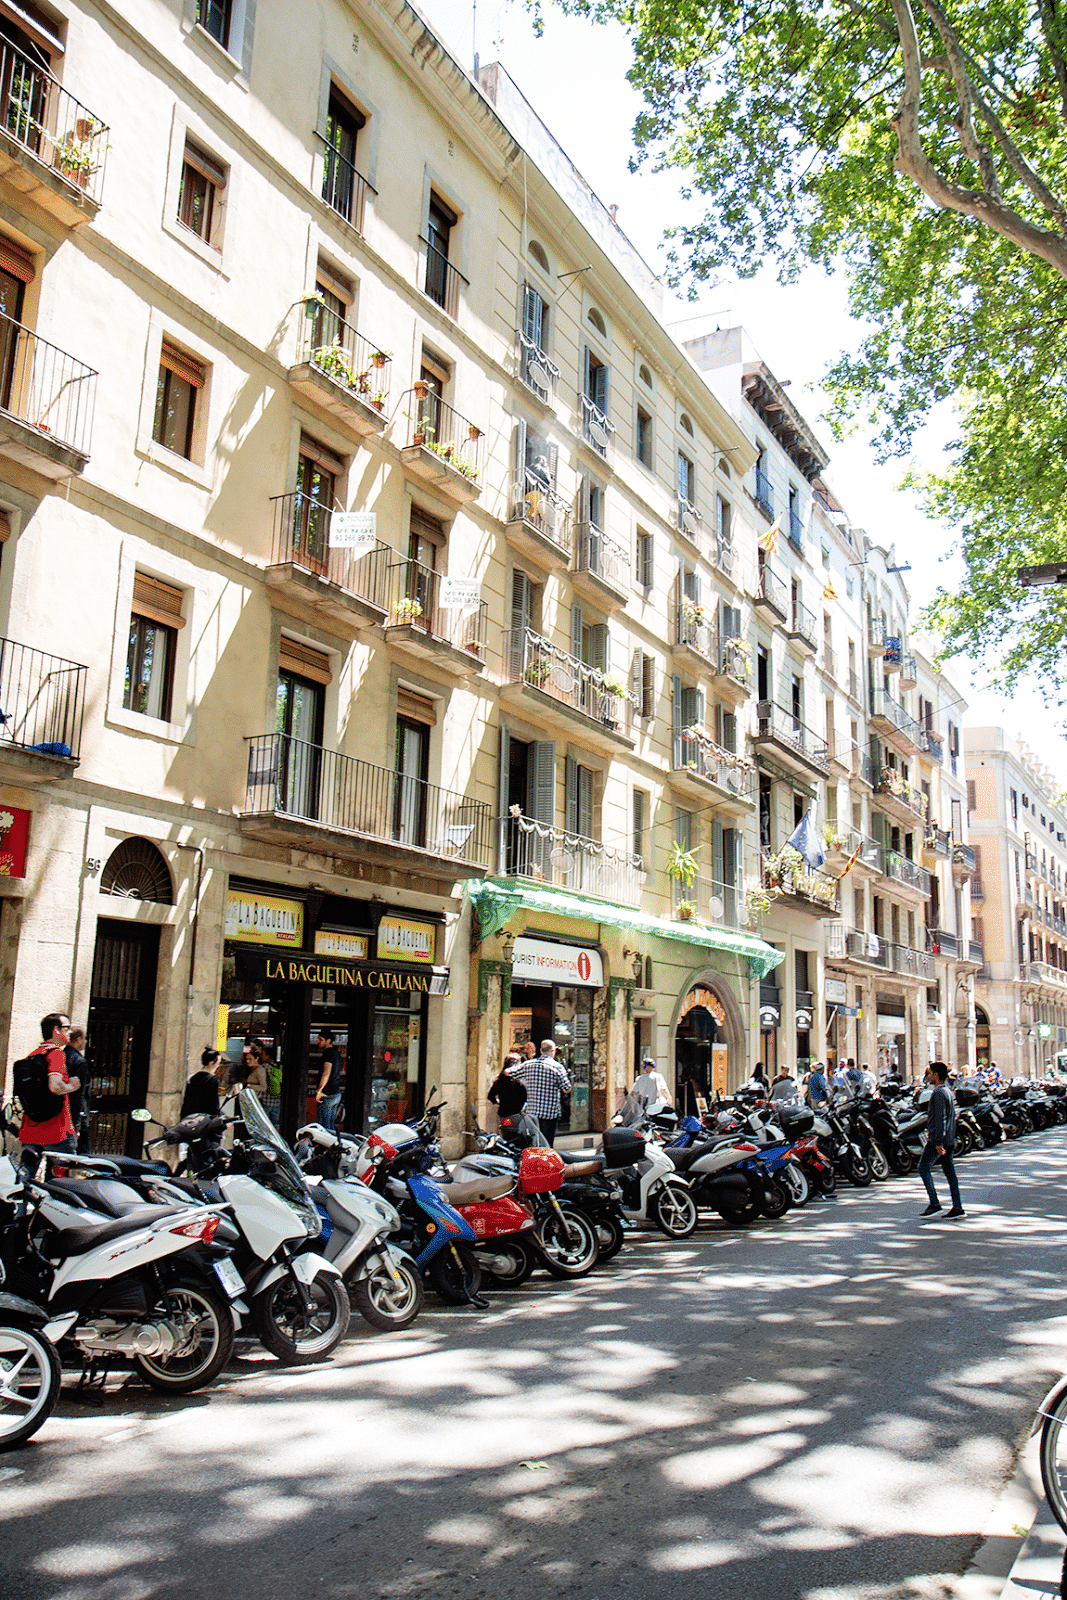 Spain Day 5: Barcelona: La Rambla and City Walking Tour